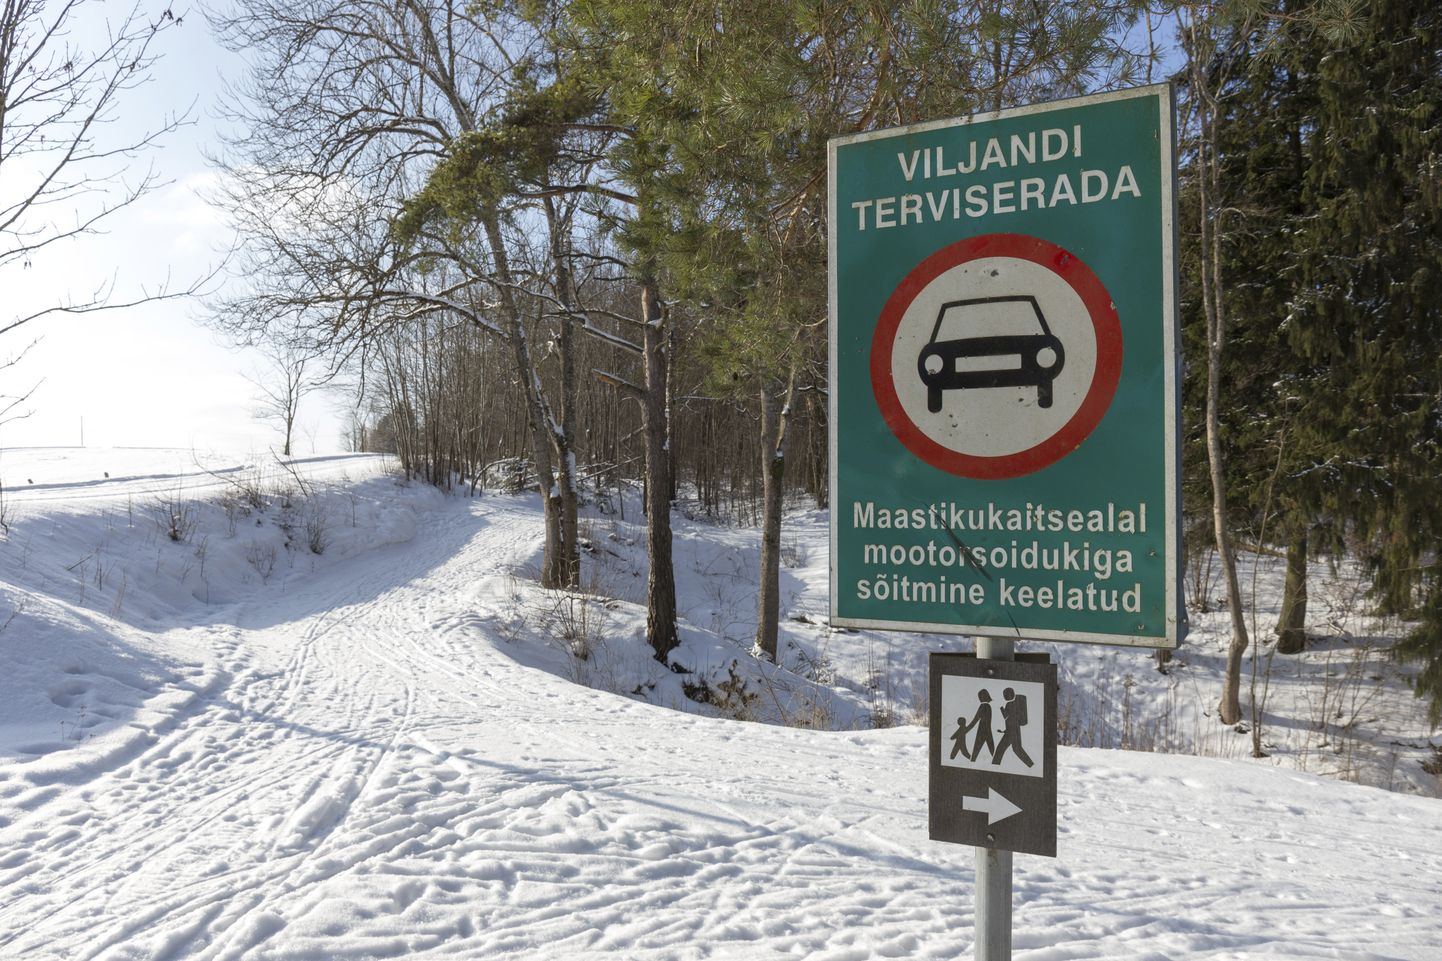 Olgugi et Viljandi järve terviseraja ääres keelavad märgid seal mootorsõidukiga liikuda, leidub nii mõnigi, kes seal põrina saatel sõidab.